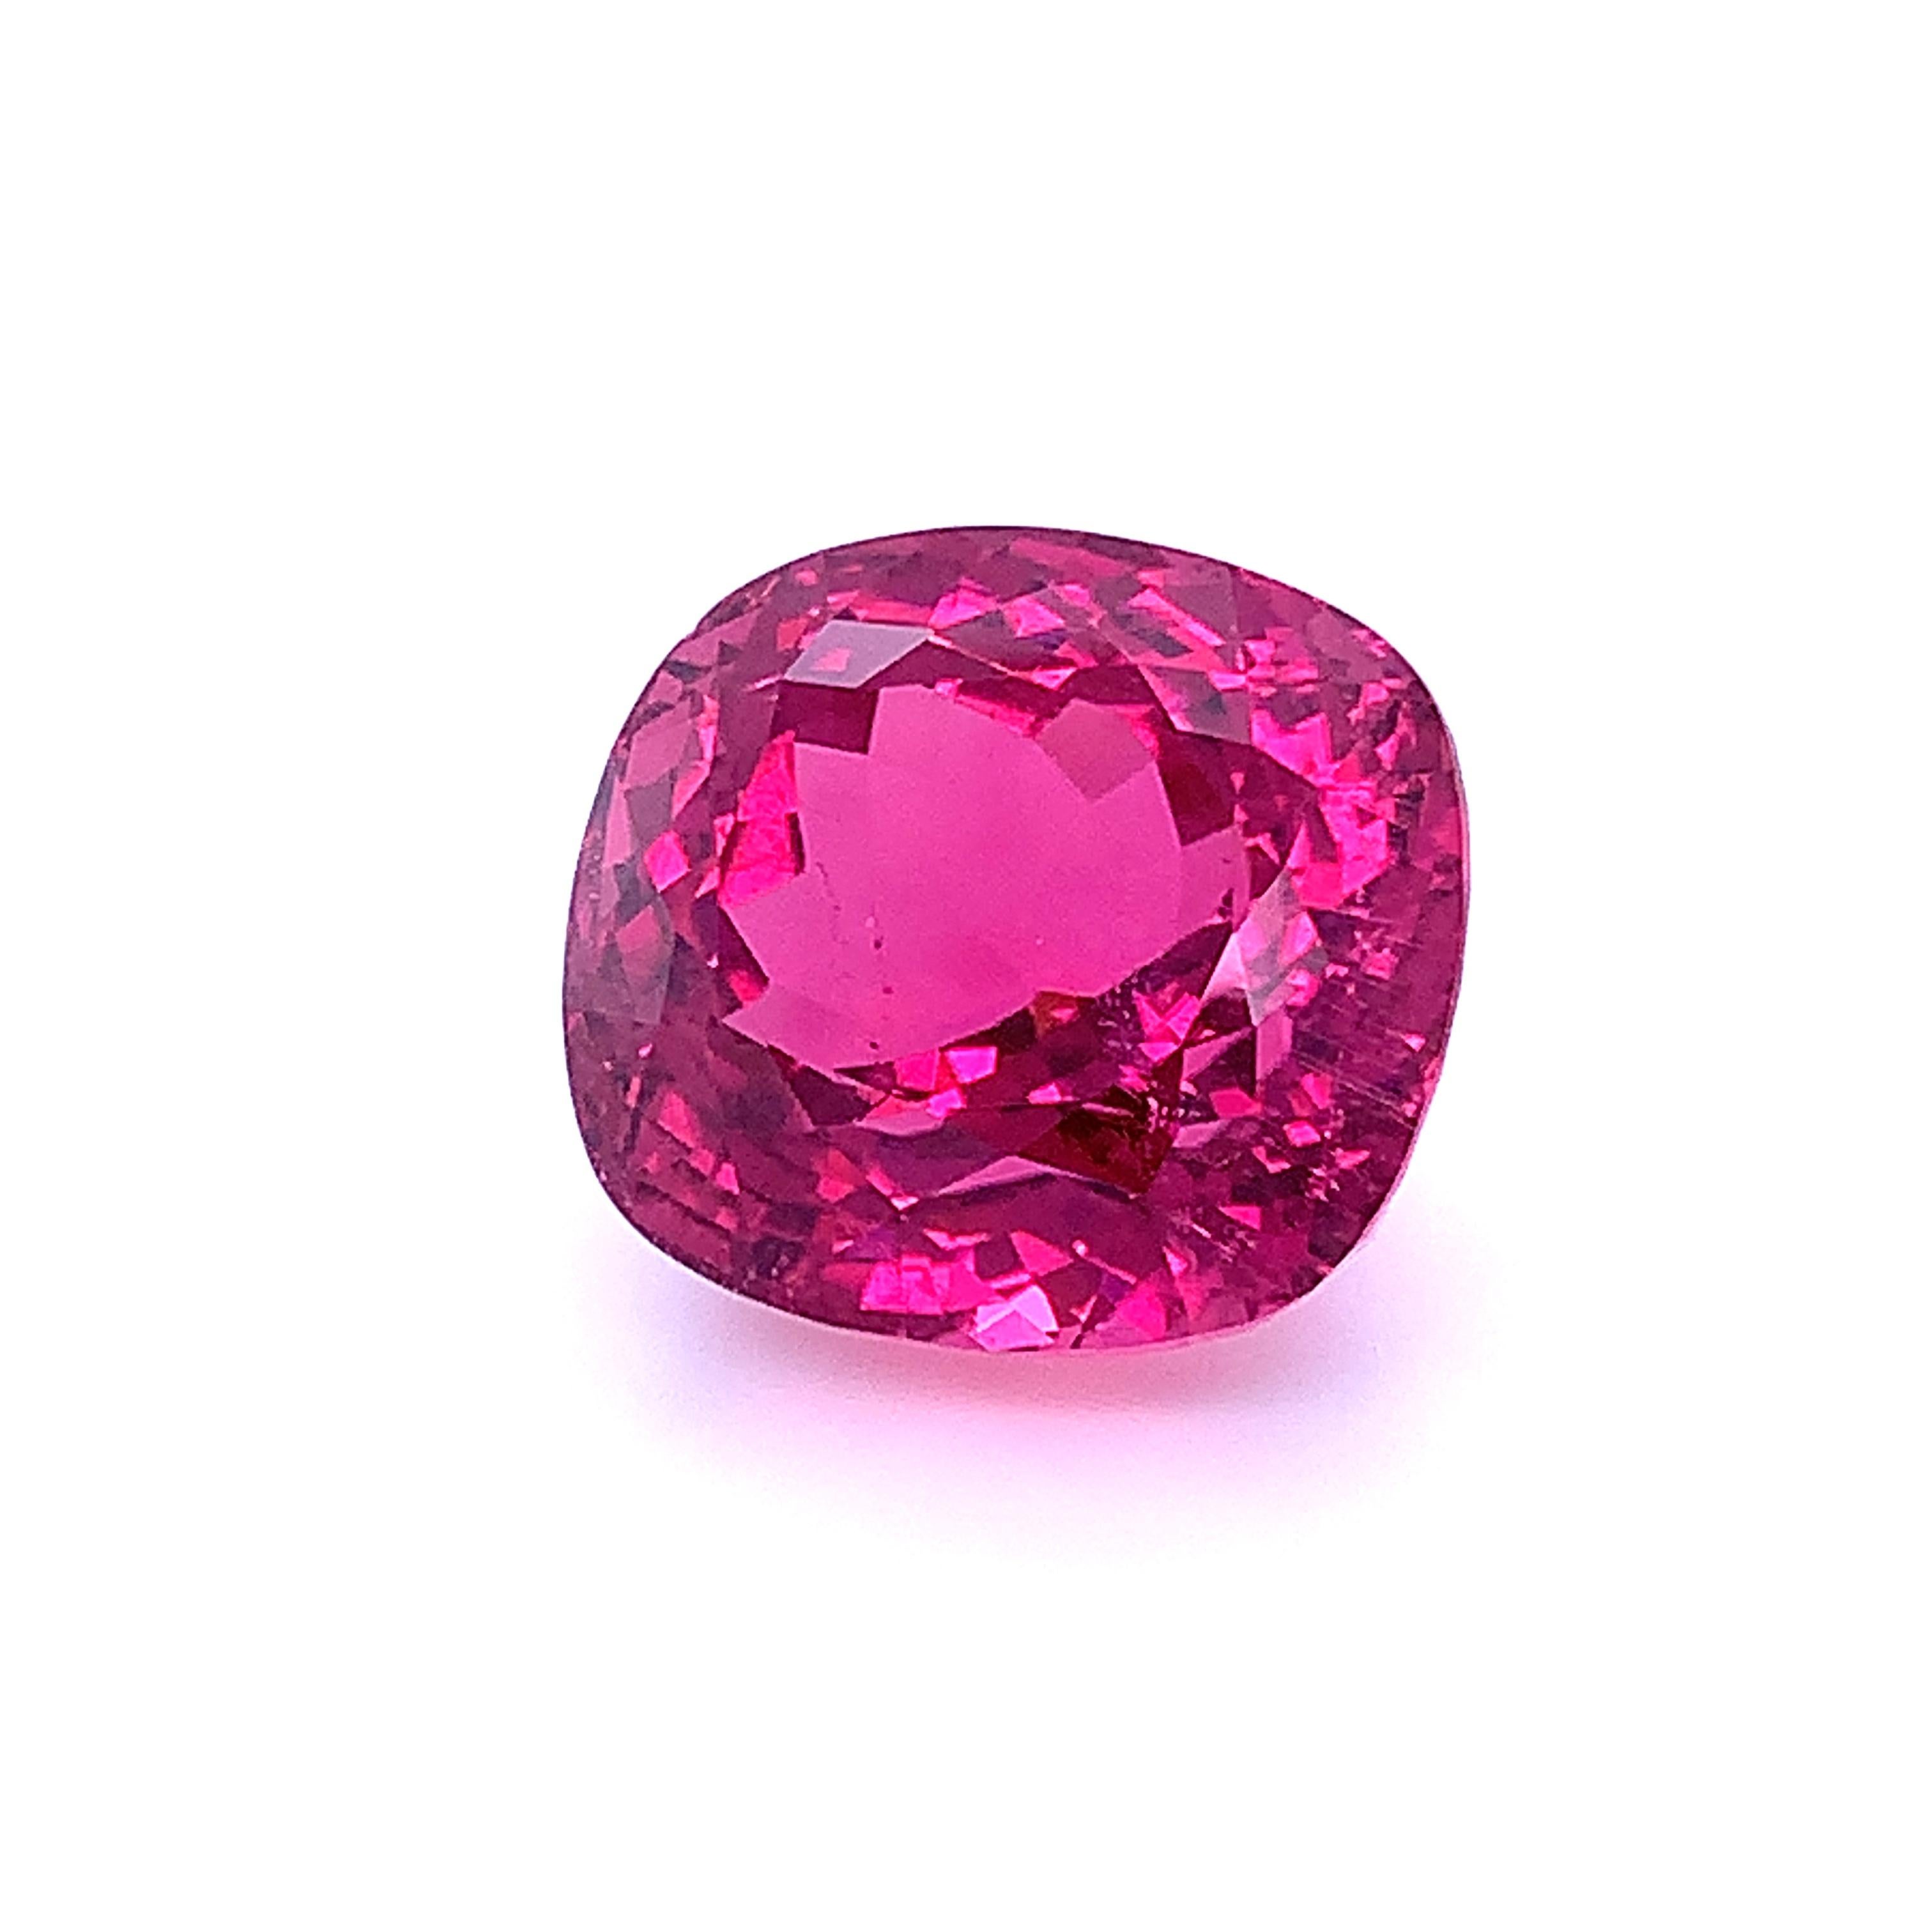 Artisan 44.97 Carat Purple Pink Tourmaline, Loose Gemstone, GIA Certified